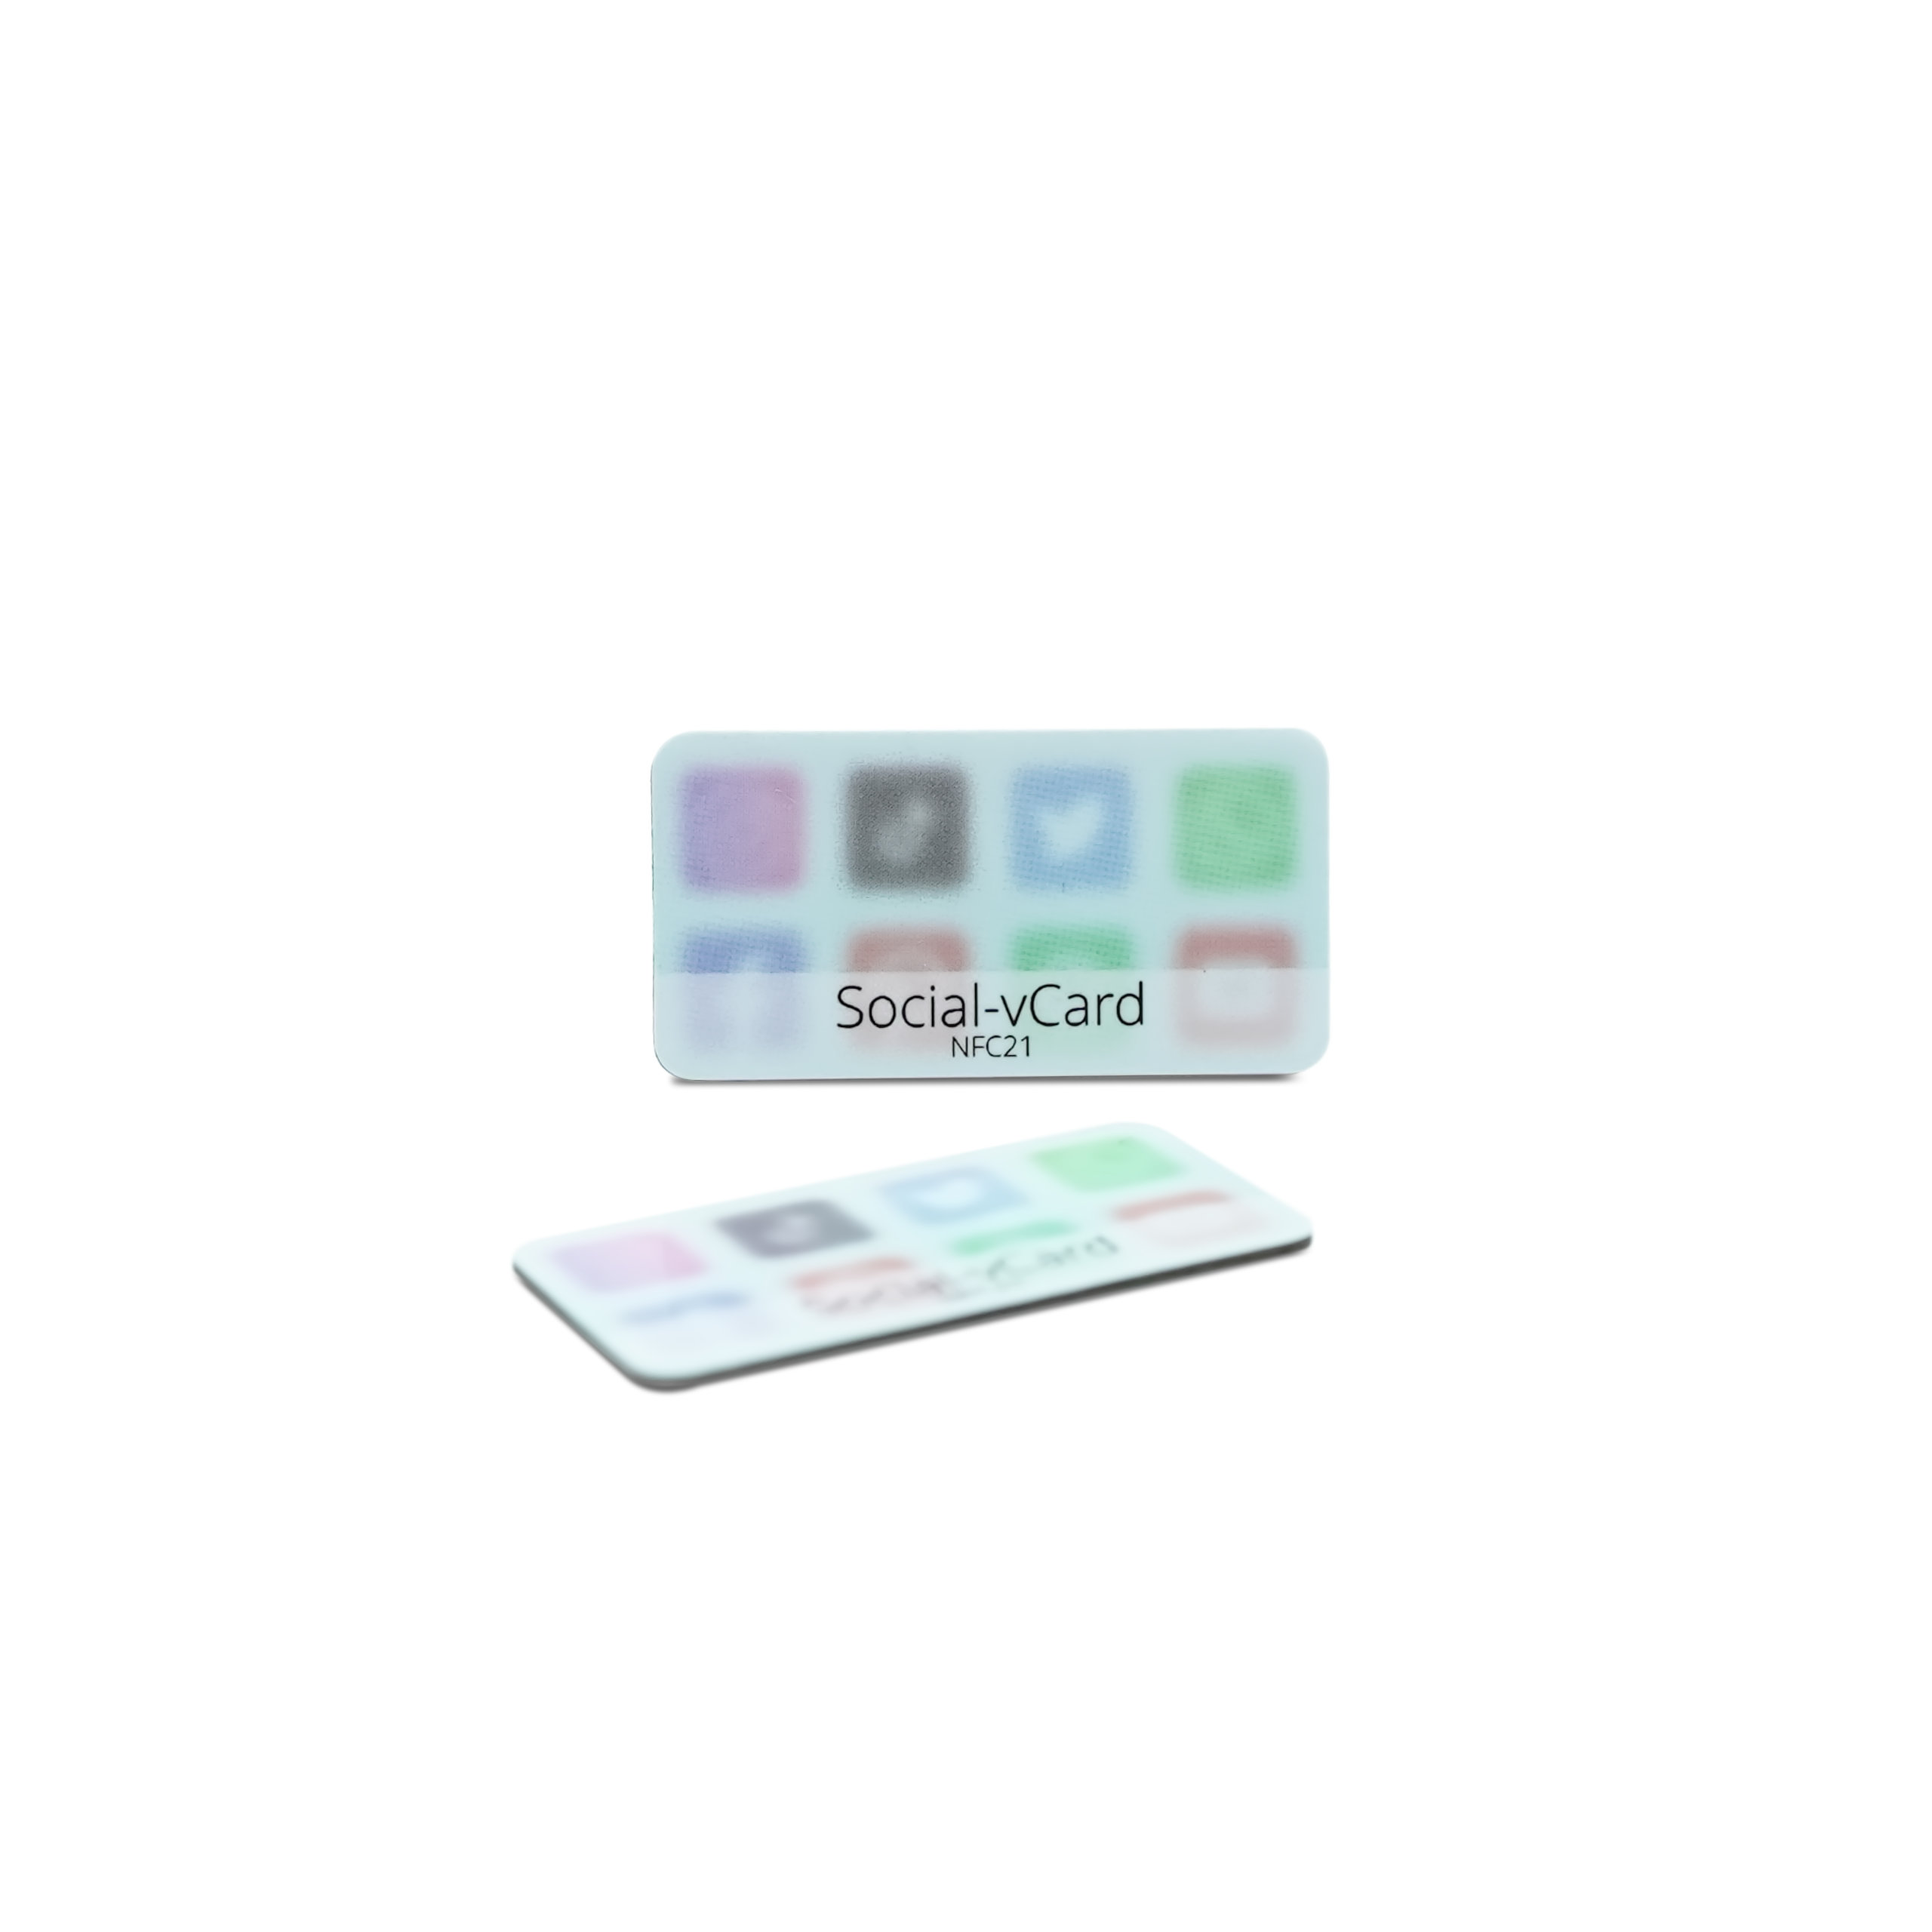 Social-vCard Light - Digitaler Social Media Sticker - PET - 35 x 18 mm - hellblau